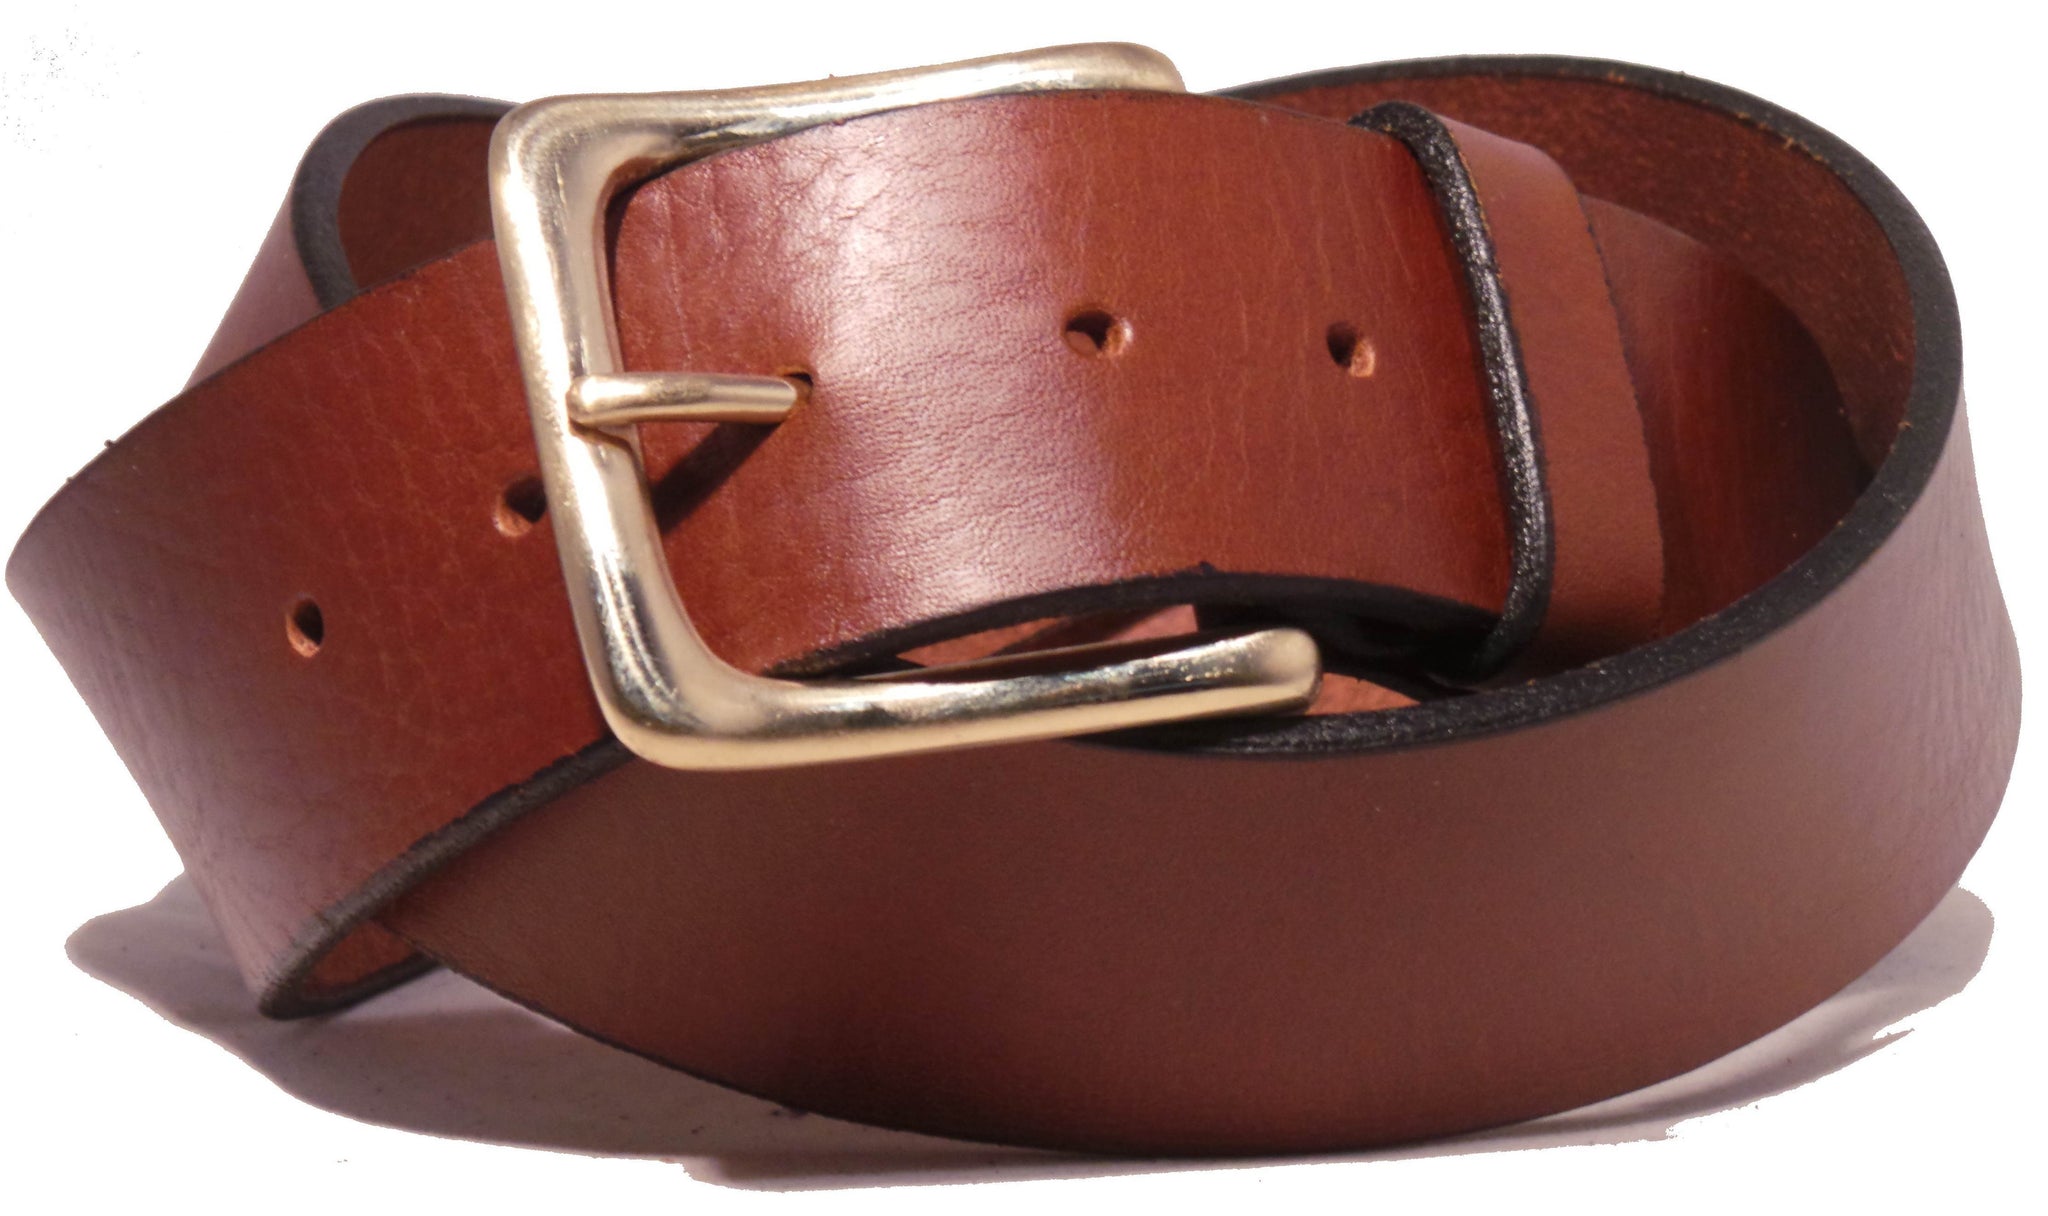 Dark brown leather belt with brass buckle app. 135cm, 22,99 €